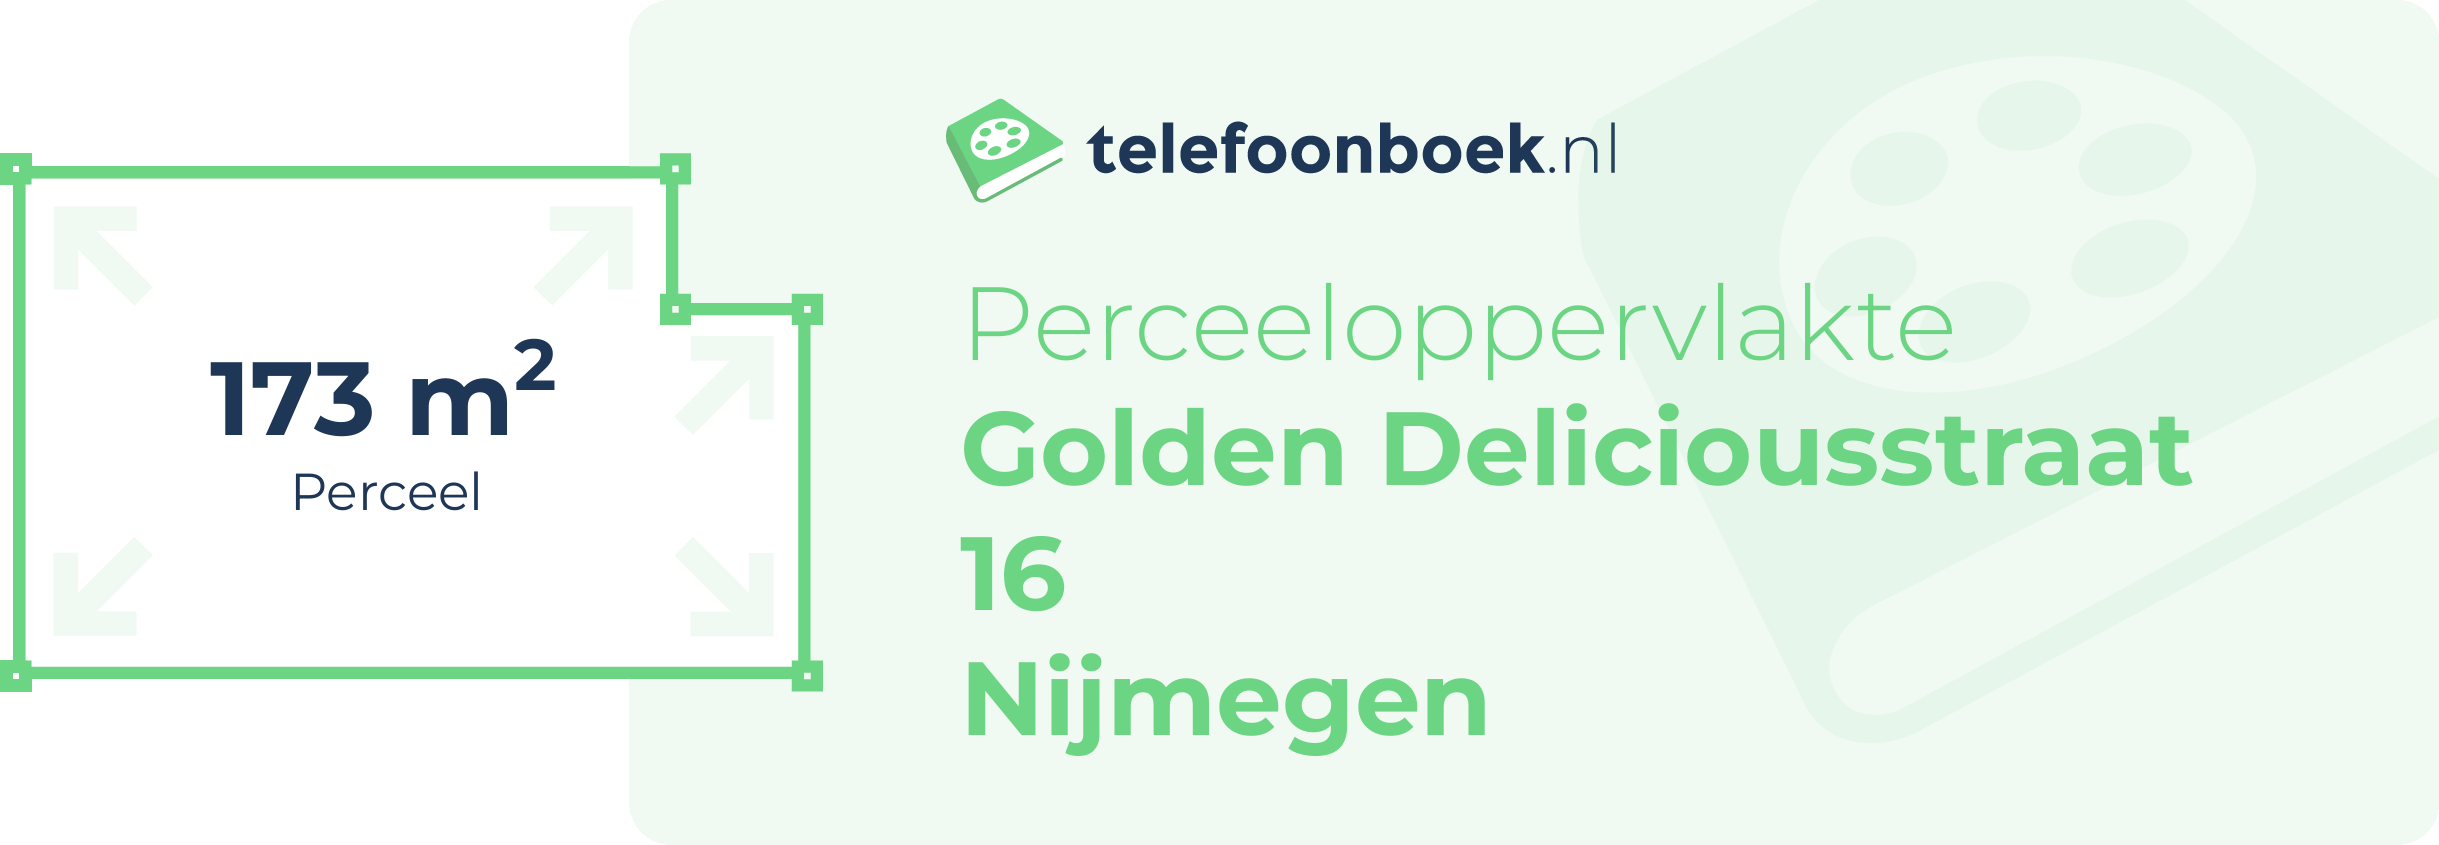 Perceeloppervlakte Golden Deliciousstraat 16 Nijmegen